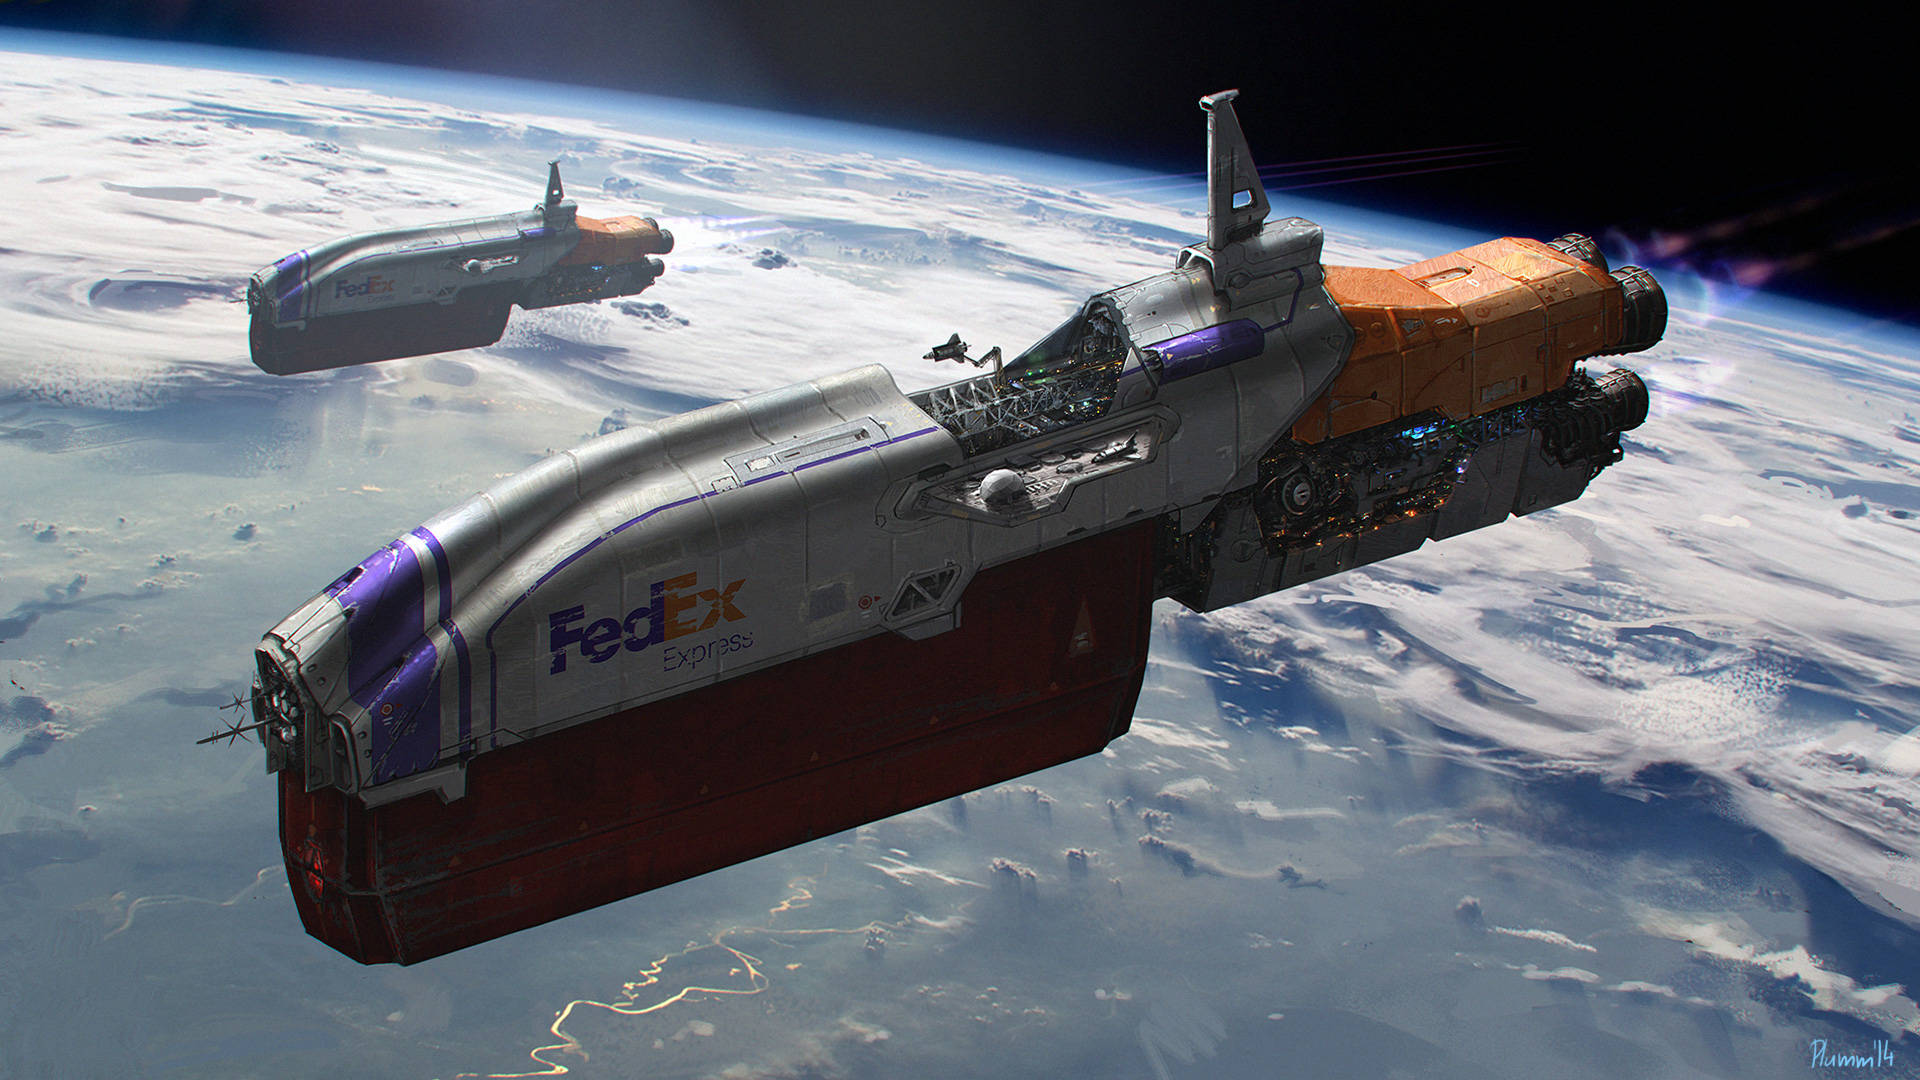 Fedex Spaceships Digital Art Background